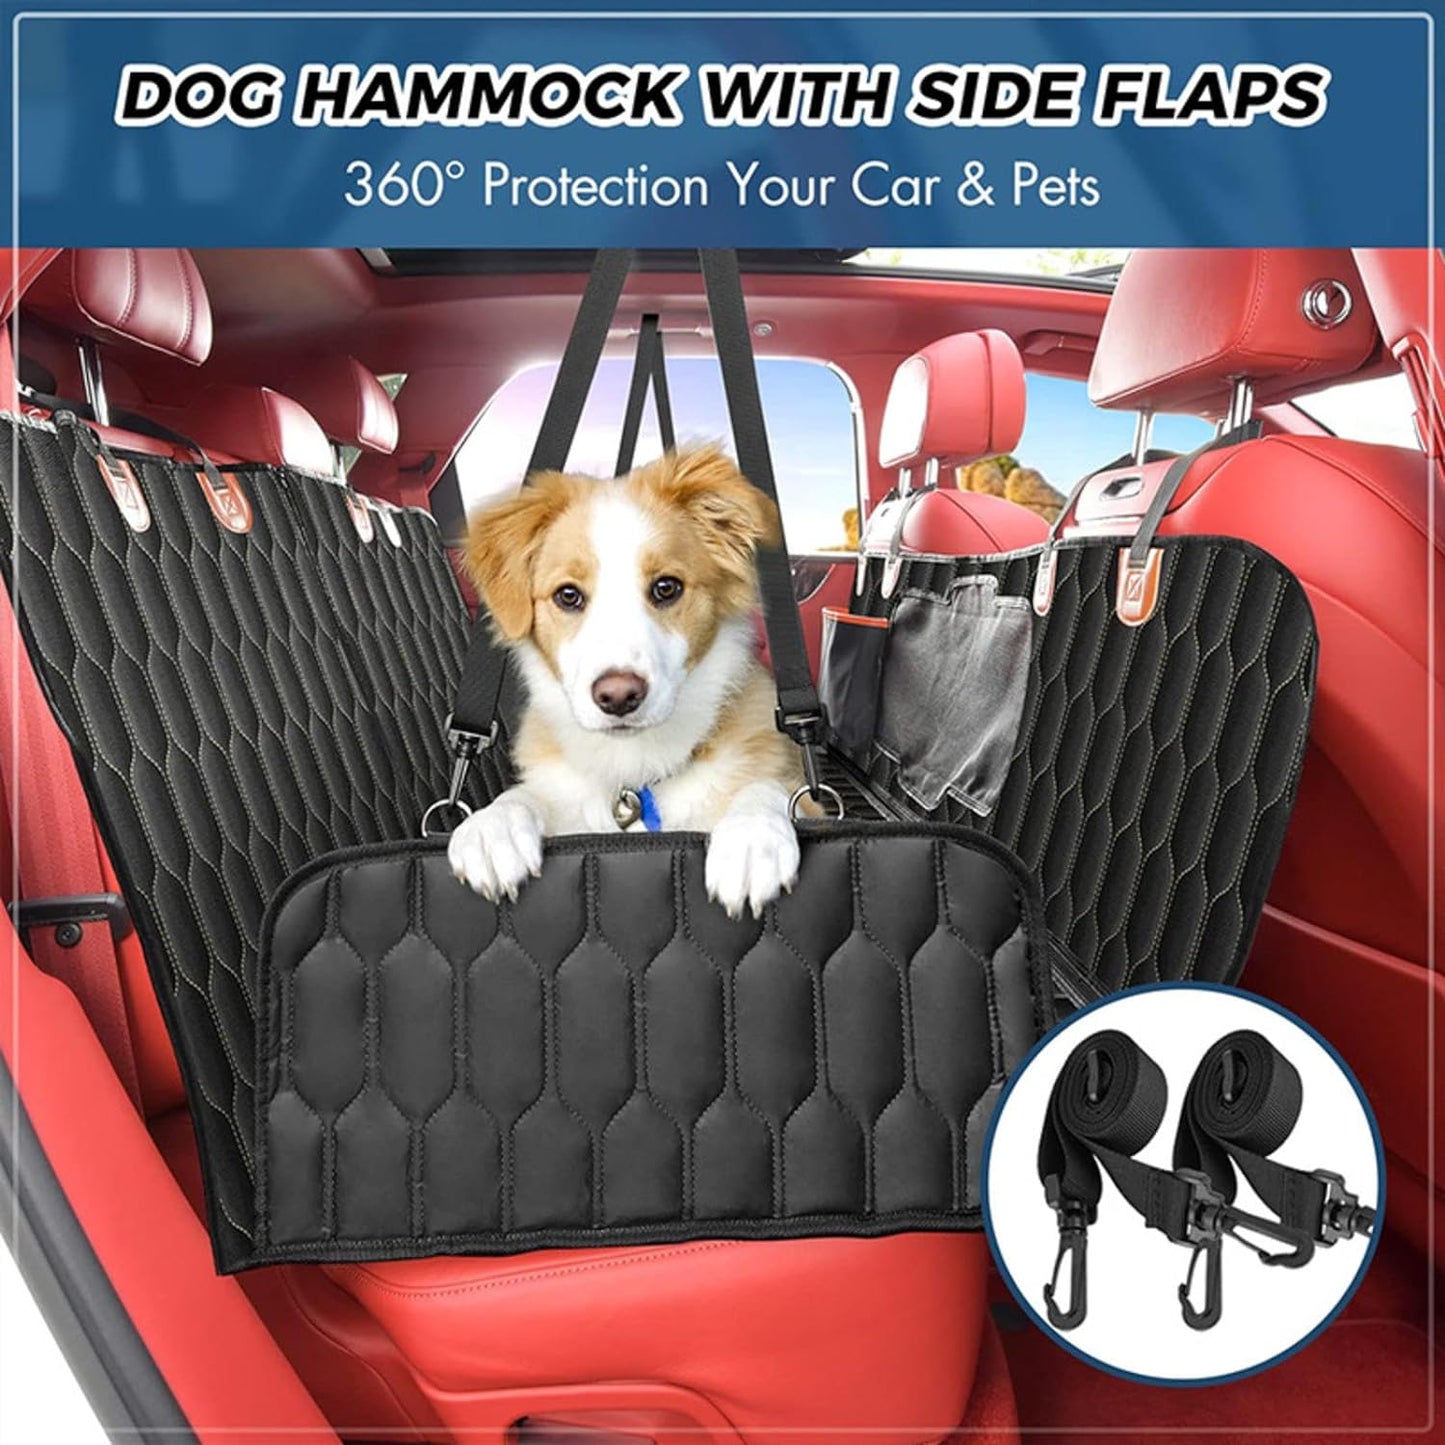 Couverture pour chien de qualité supérieure pour coffre de voiture - Couverture pour chien imperméable et résistante aux rayures - Couverture de voiture pour coffre de chien - Couverture de coffre pour chiens 